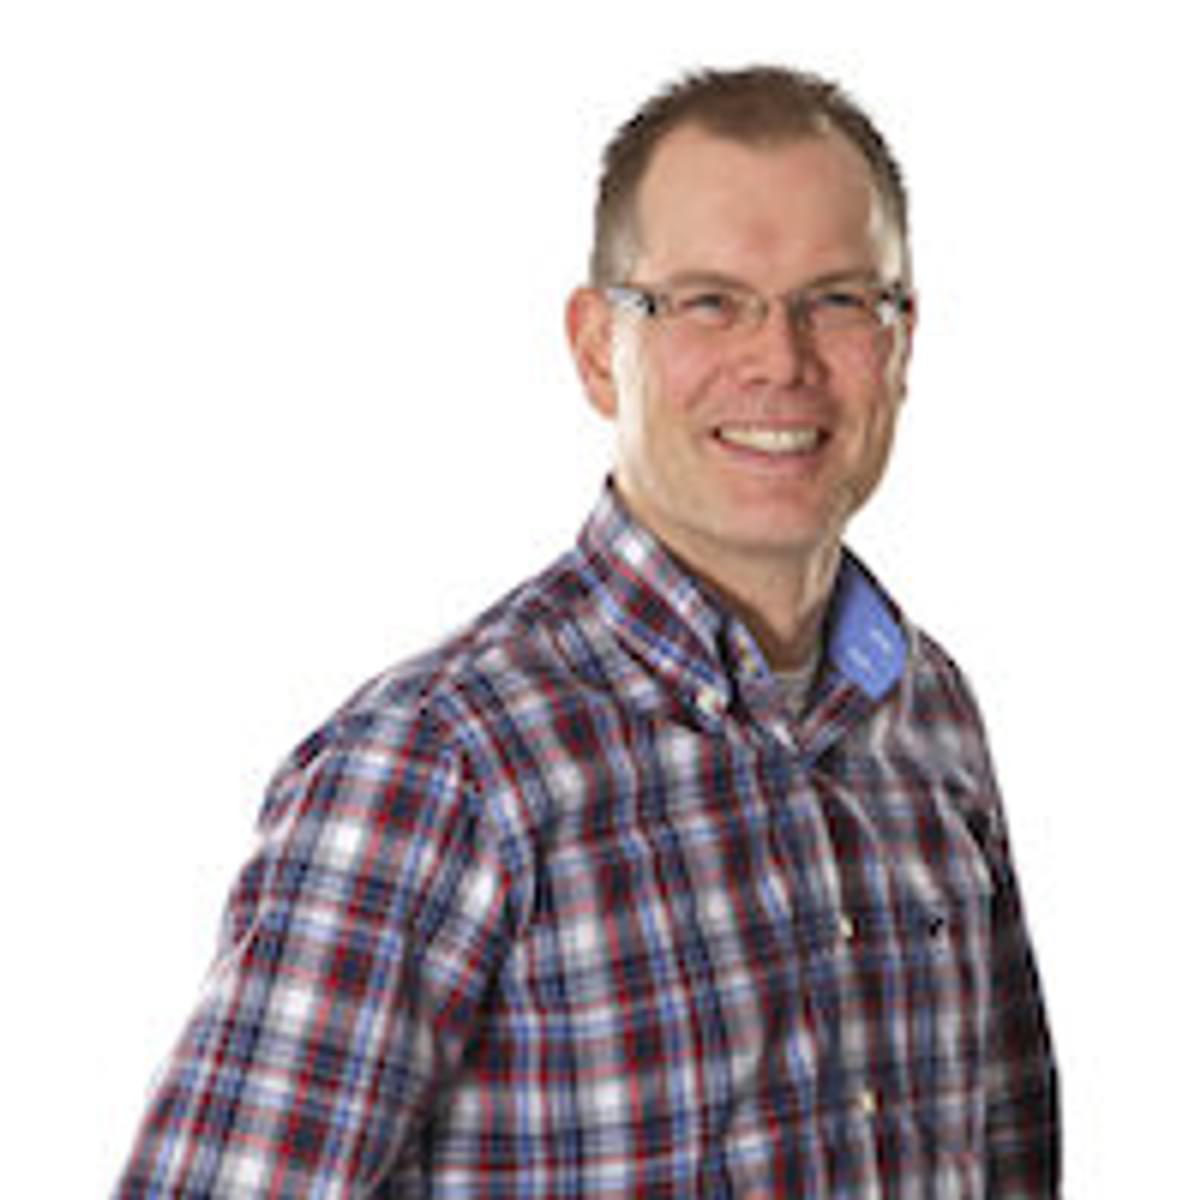 Wilfried Dudink is managing director van de CDN-divisie Leaseweb image